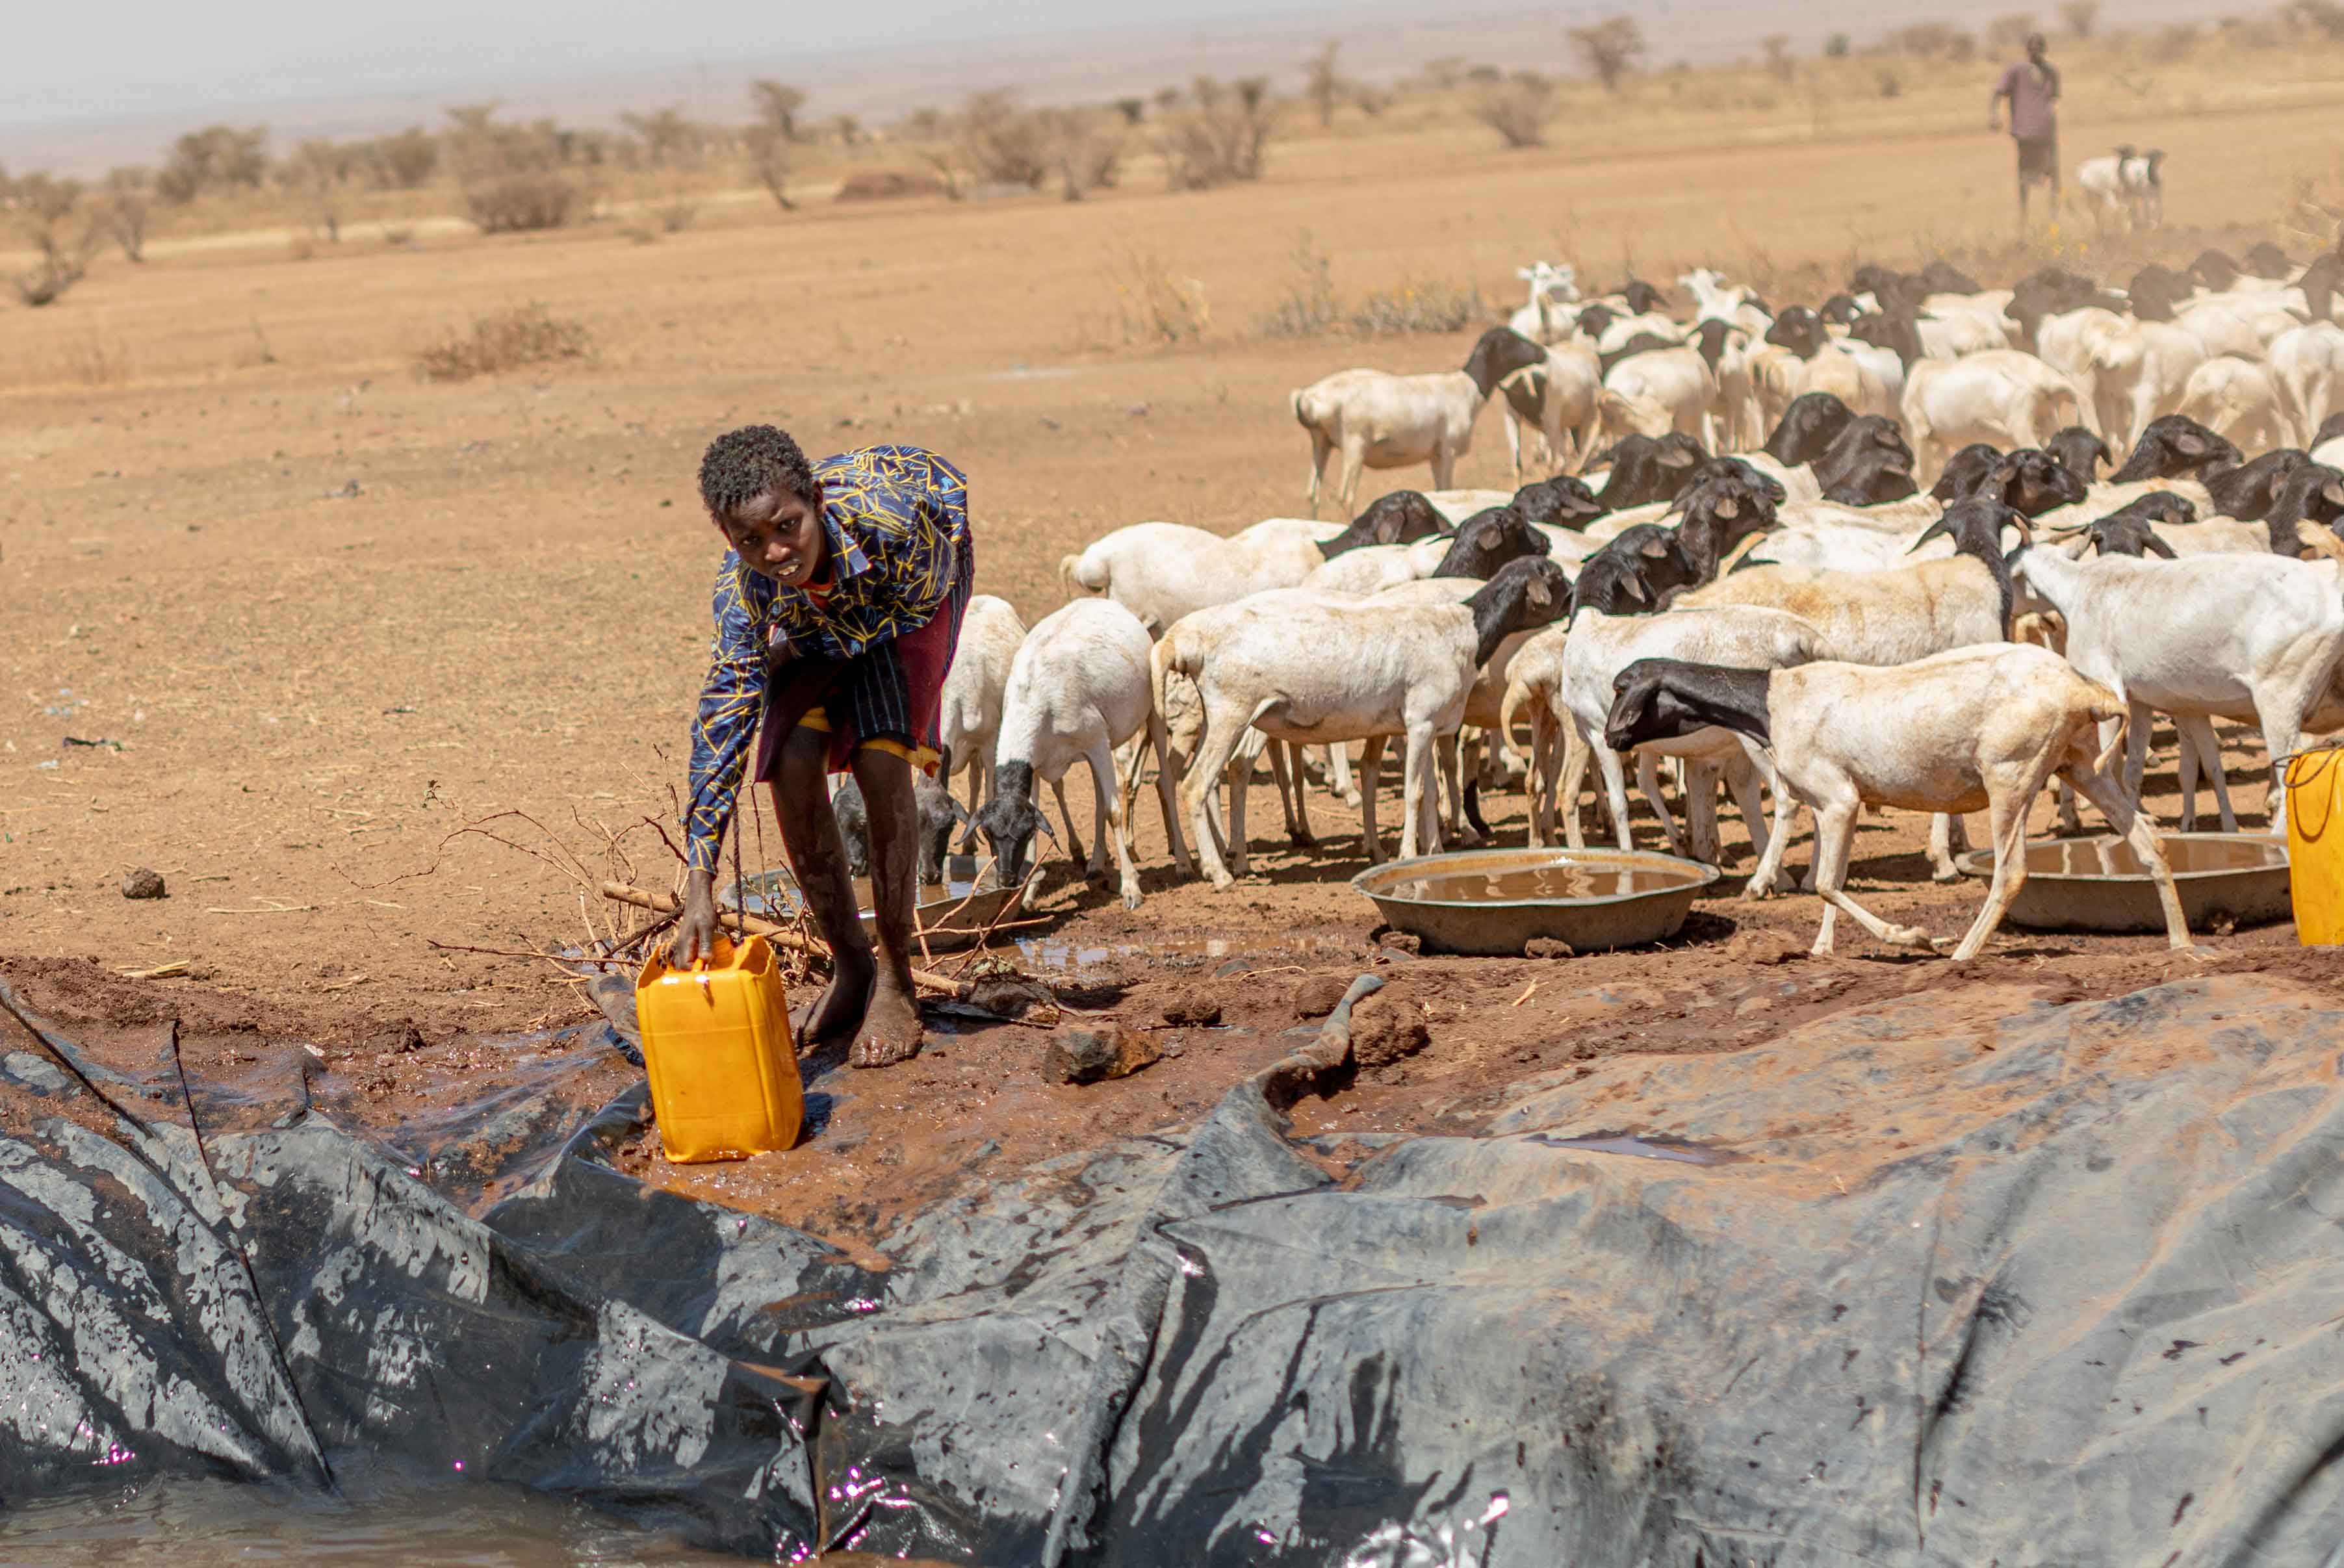 Ein Junge schöpft mit einem Kanister Wasser aus einer Grube, hinter ihm steht eine abgemagerte Herde Ziegen.